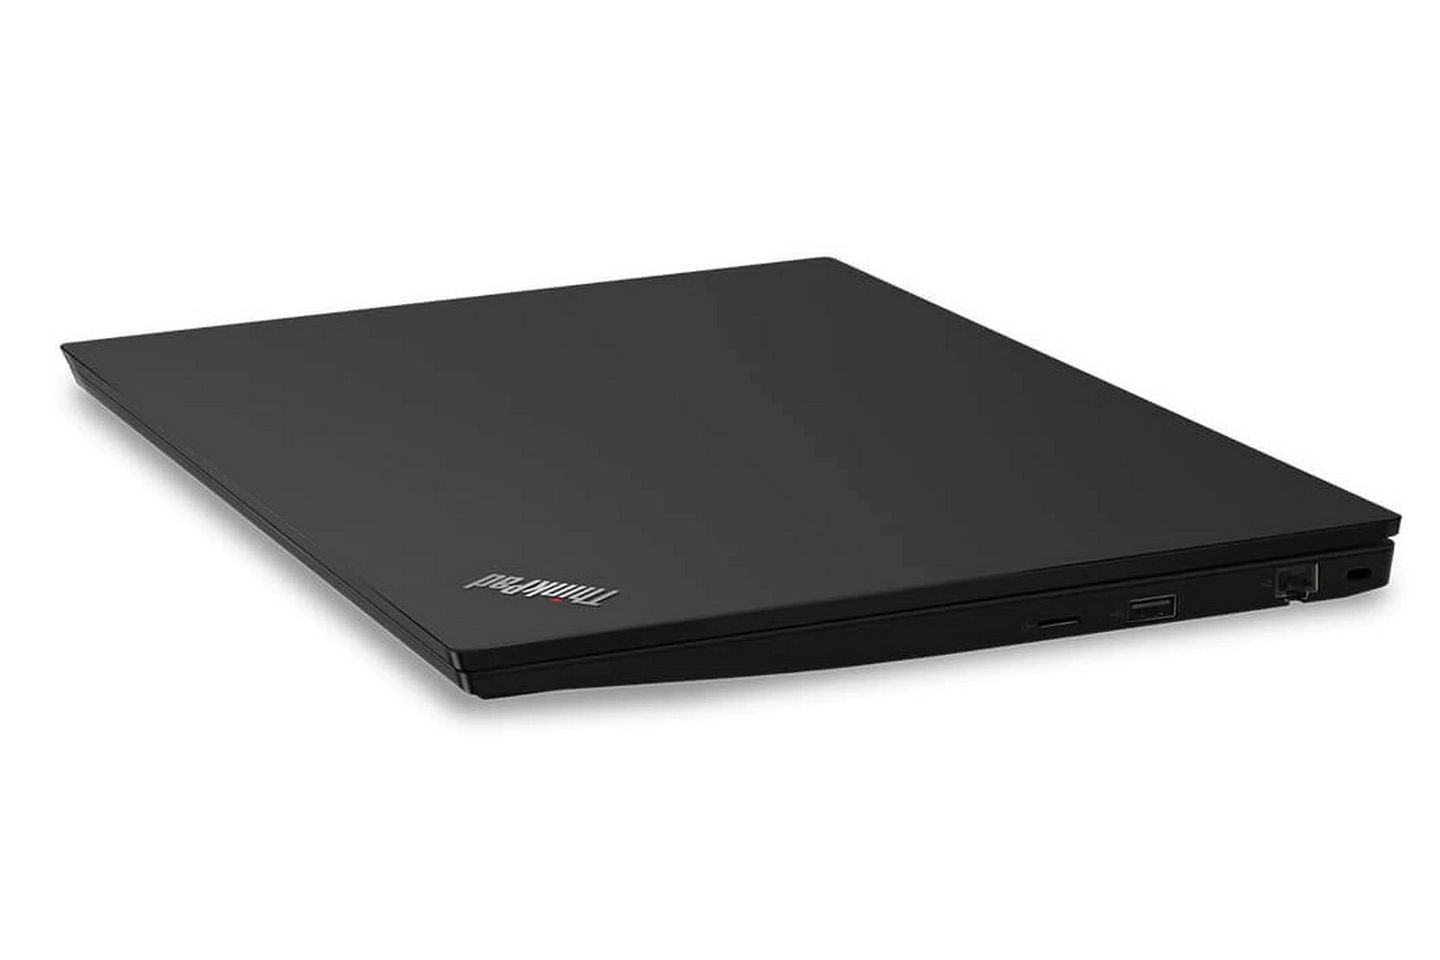 Lenovo ThinkPad E590 20NBS07000 có lớp vỏ kim loại đen bóng bẩy